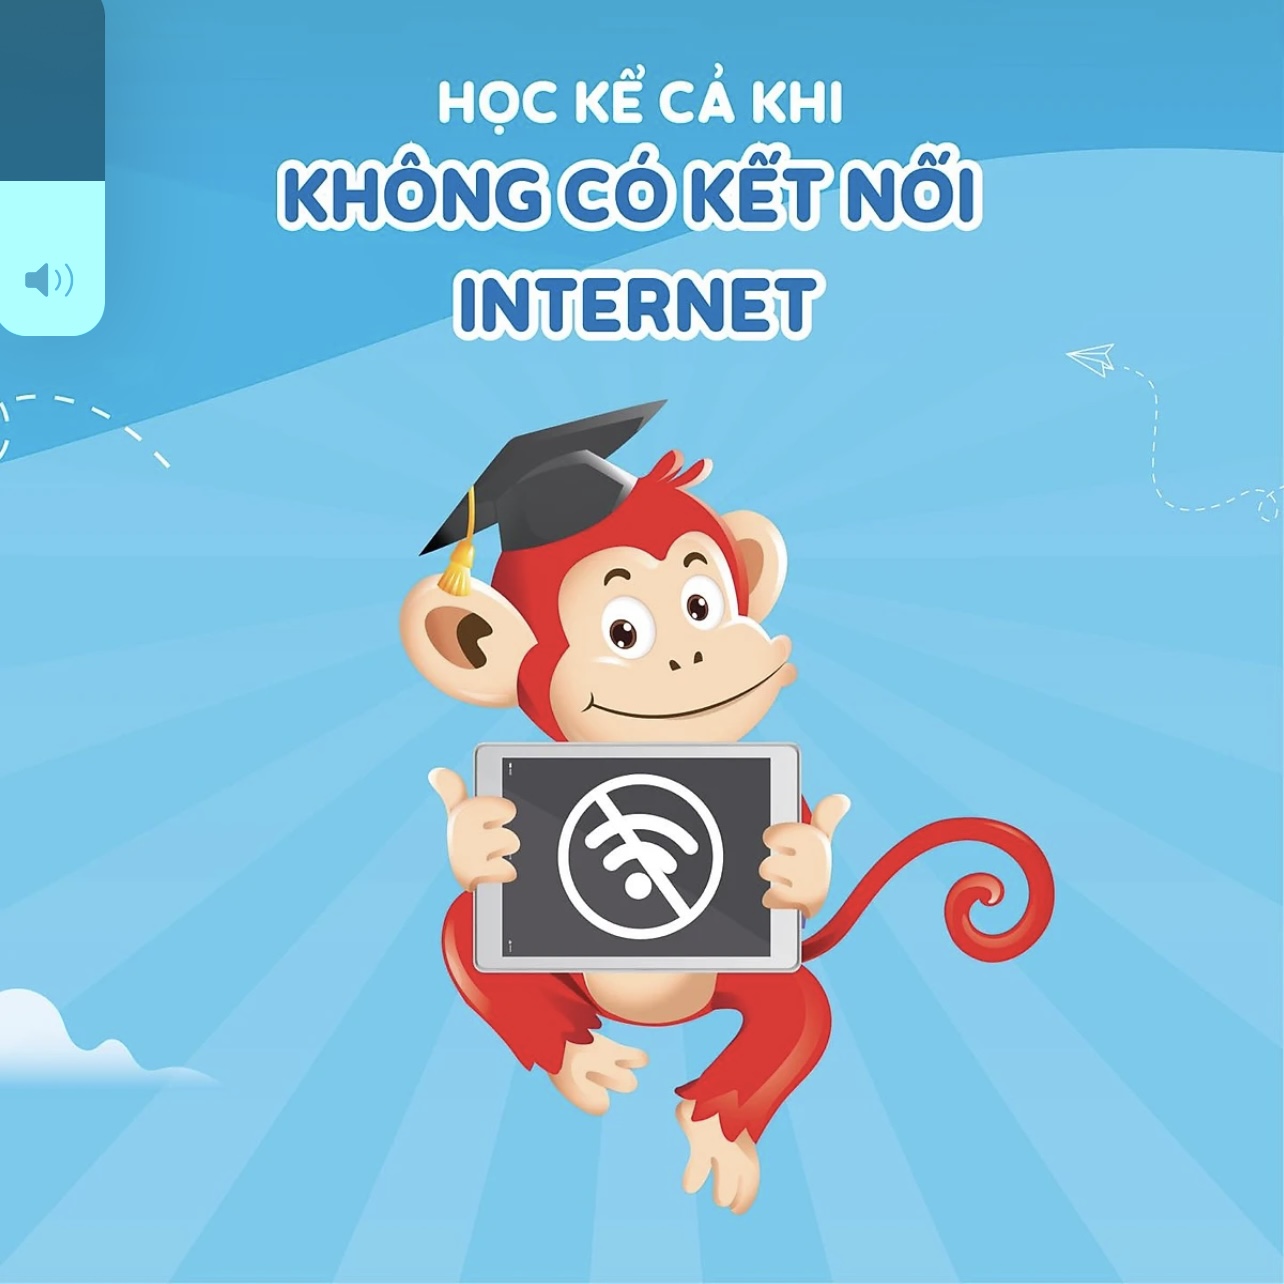 Evoucher - Monkey Stories (Trọn đời, 1 năm) - Phần mềm 4 kỹ năng tiếng Anh 